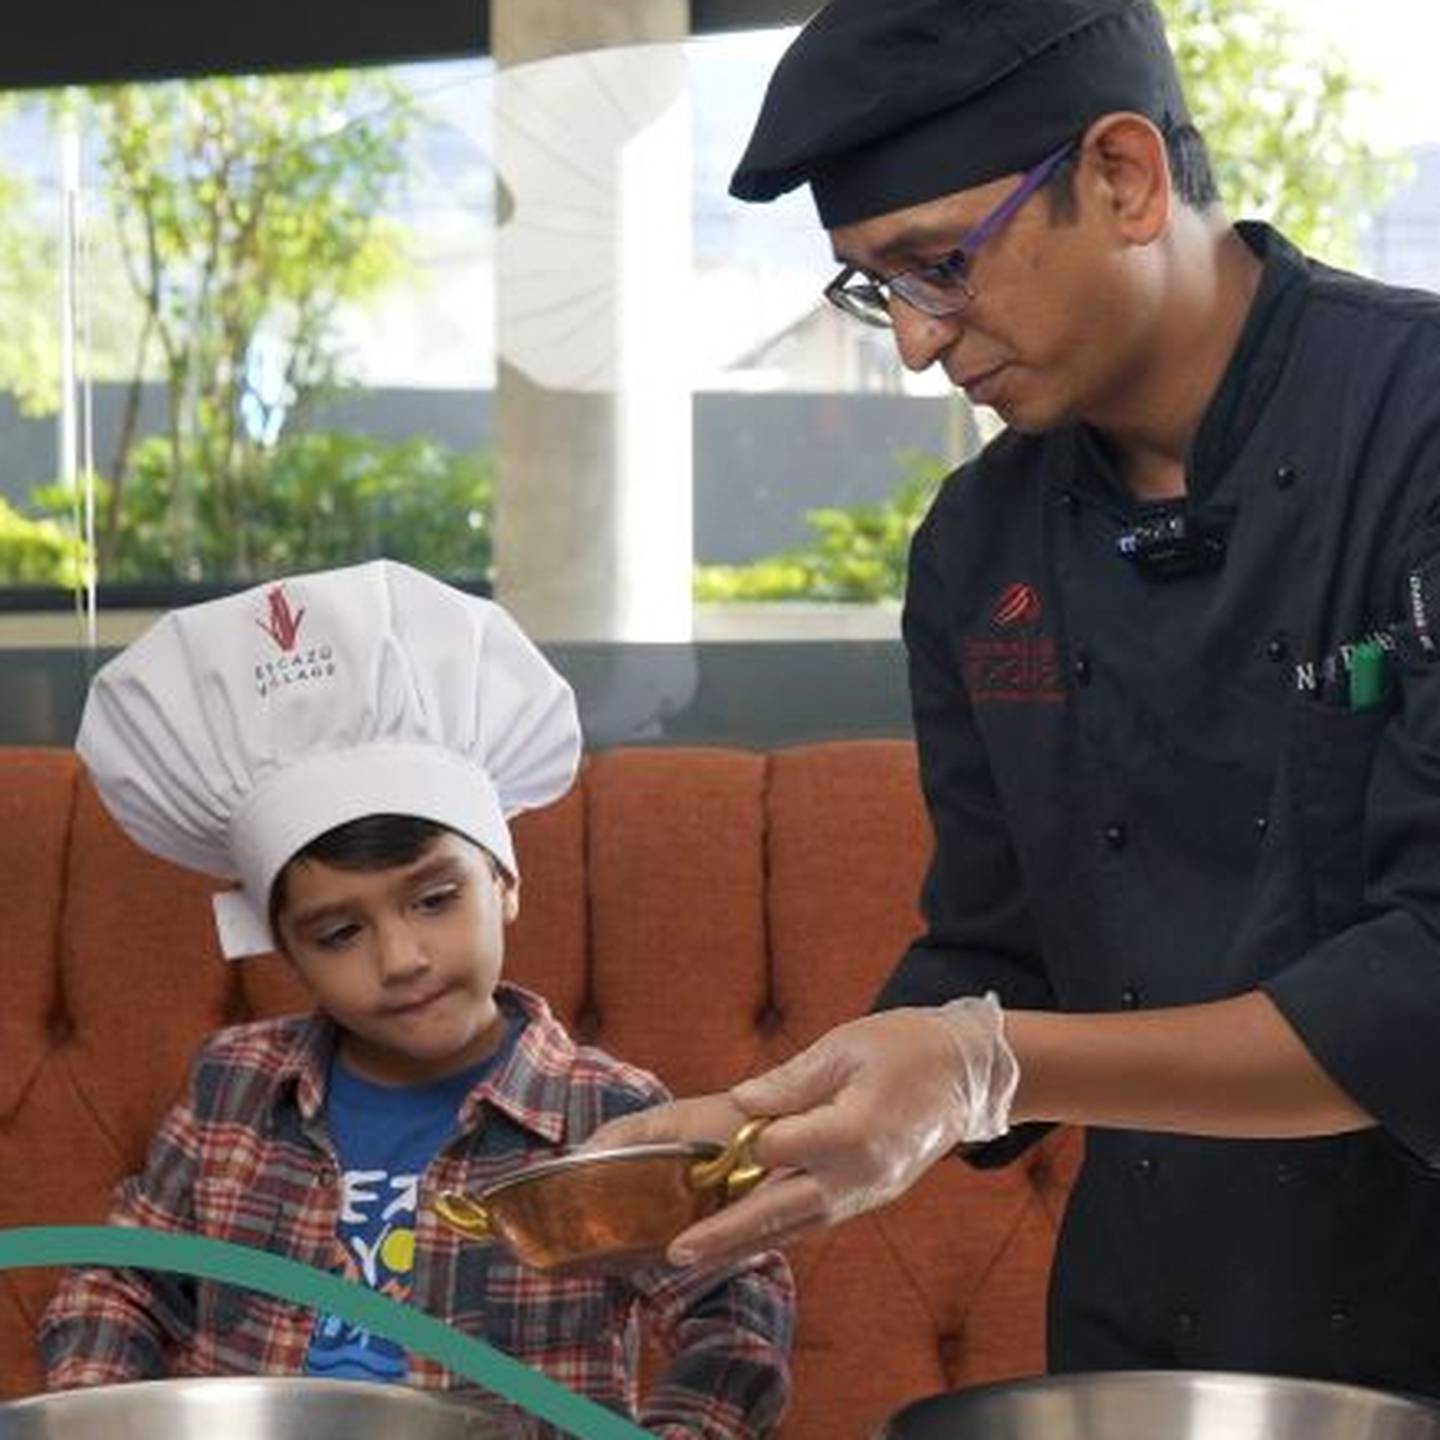 Los niños entre 6 y 12 años podrán inscribirse en el concurso Mini Chefs de manera gratuita, con el apoyo de un tutor